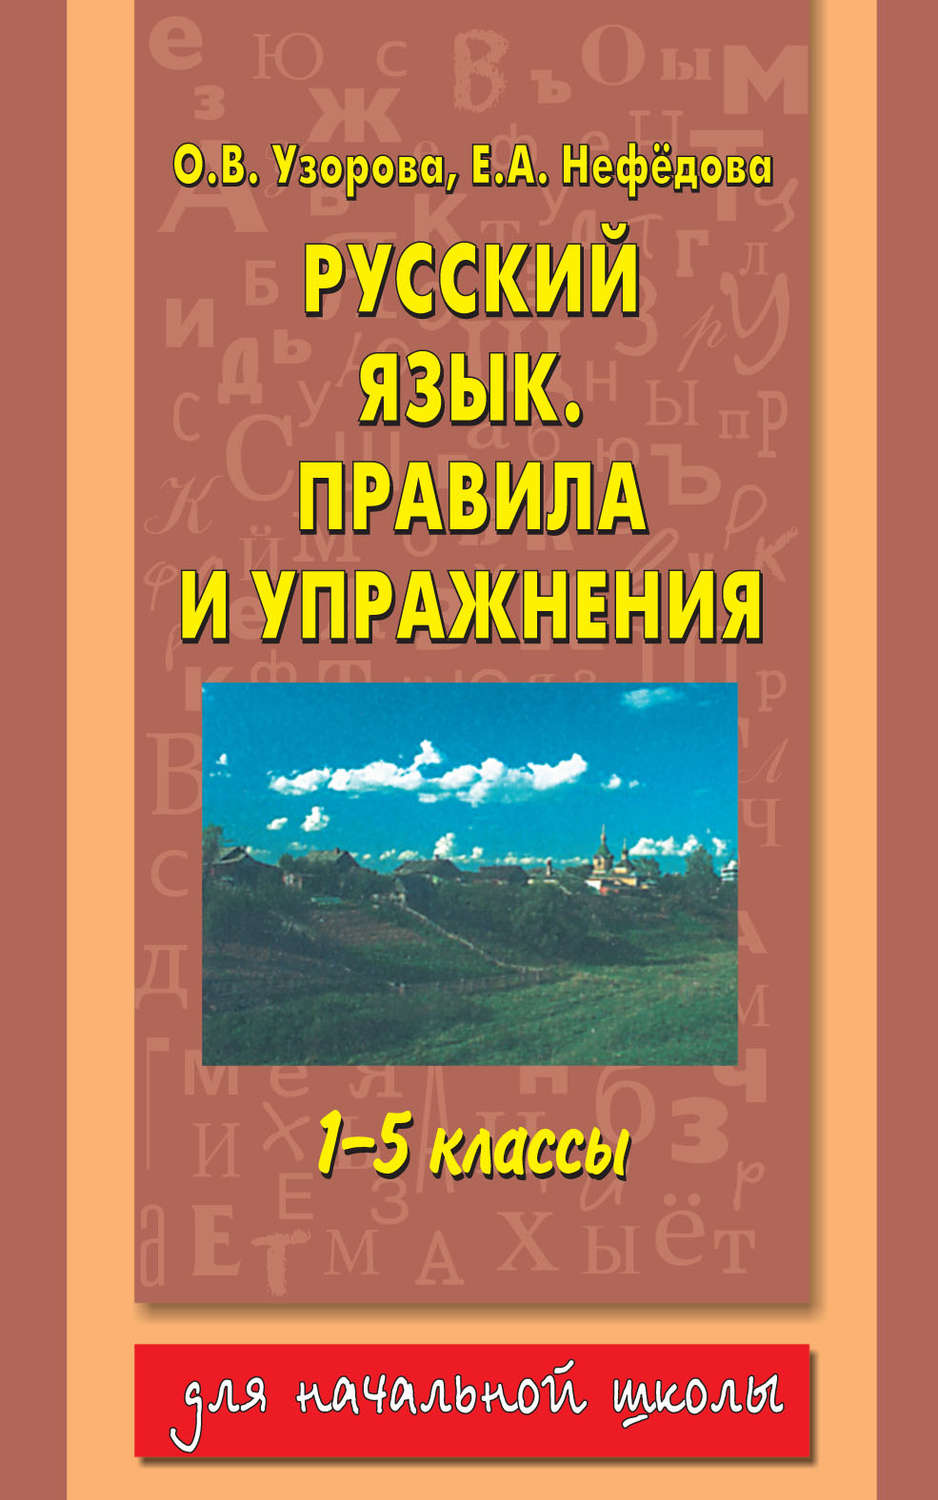 Книга правила по русскому языку скачать бесплатно